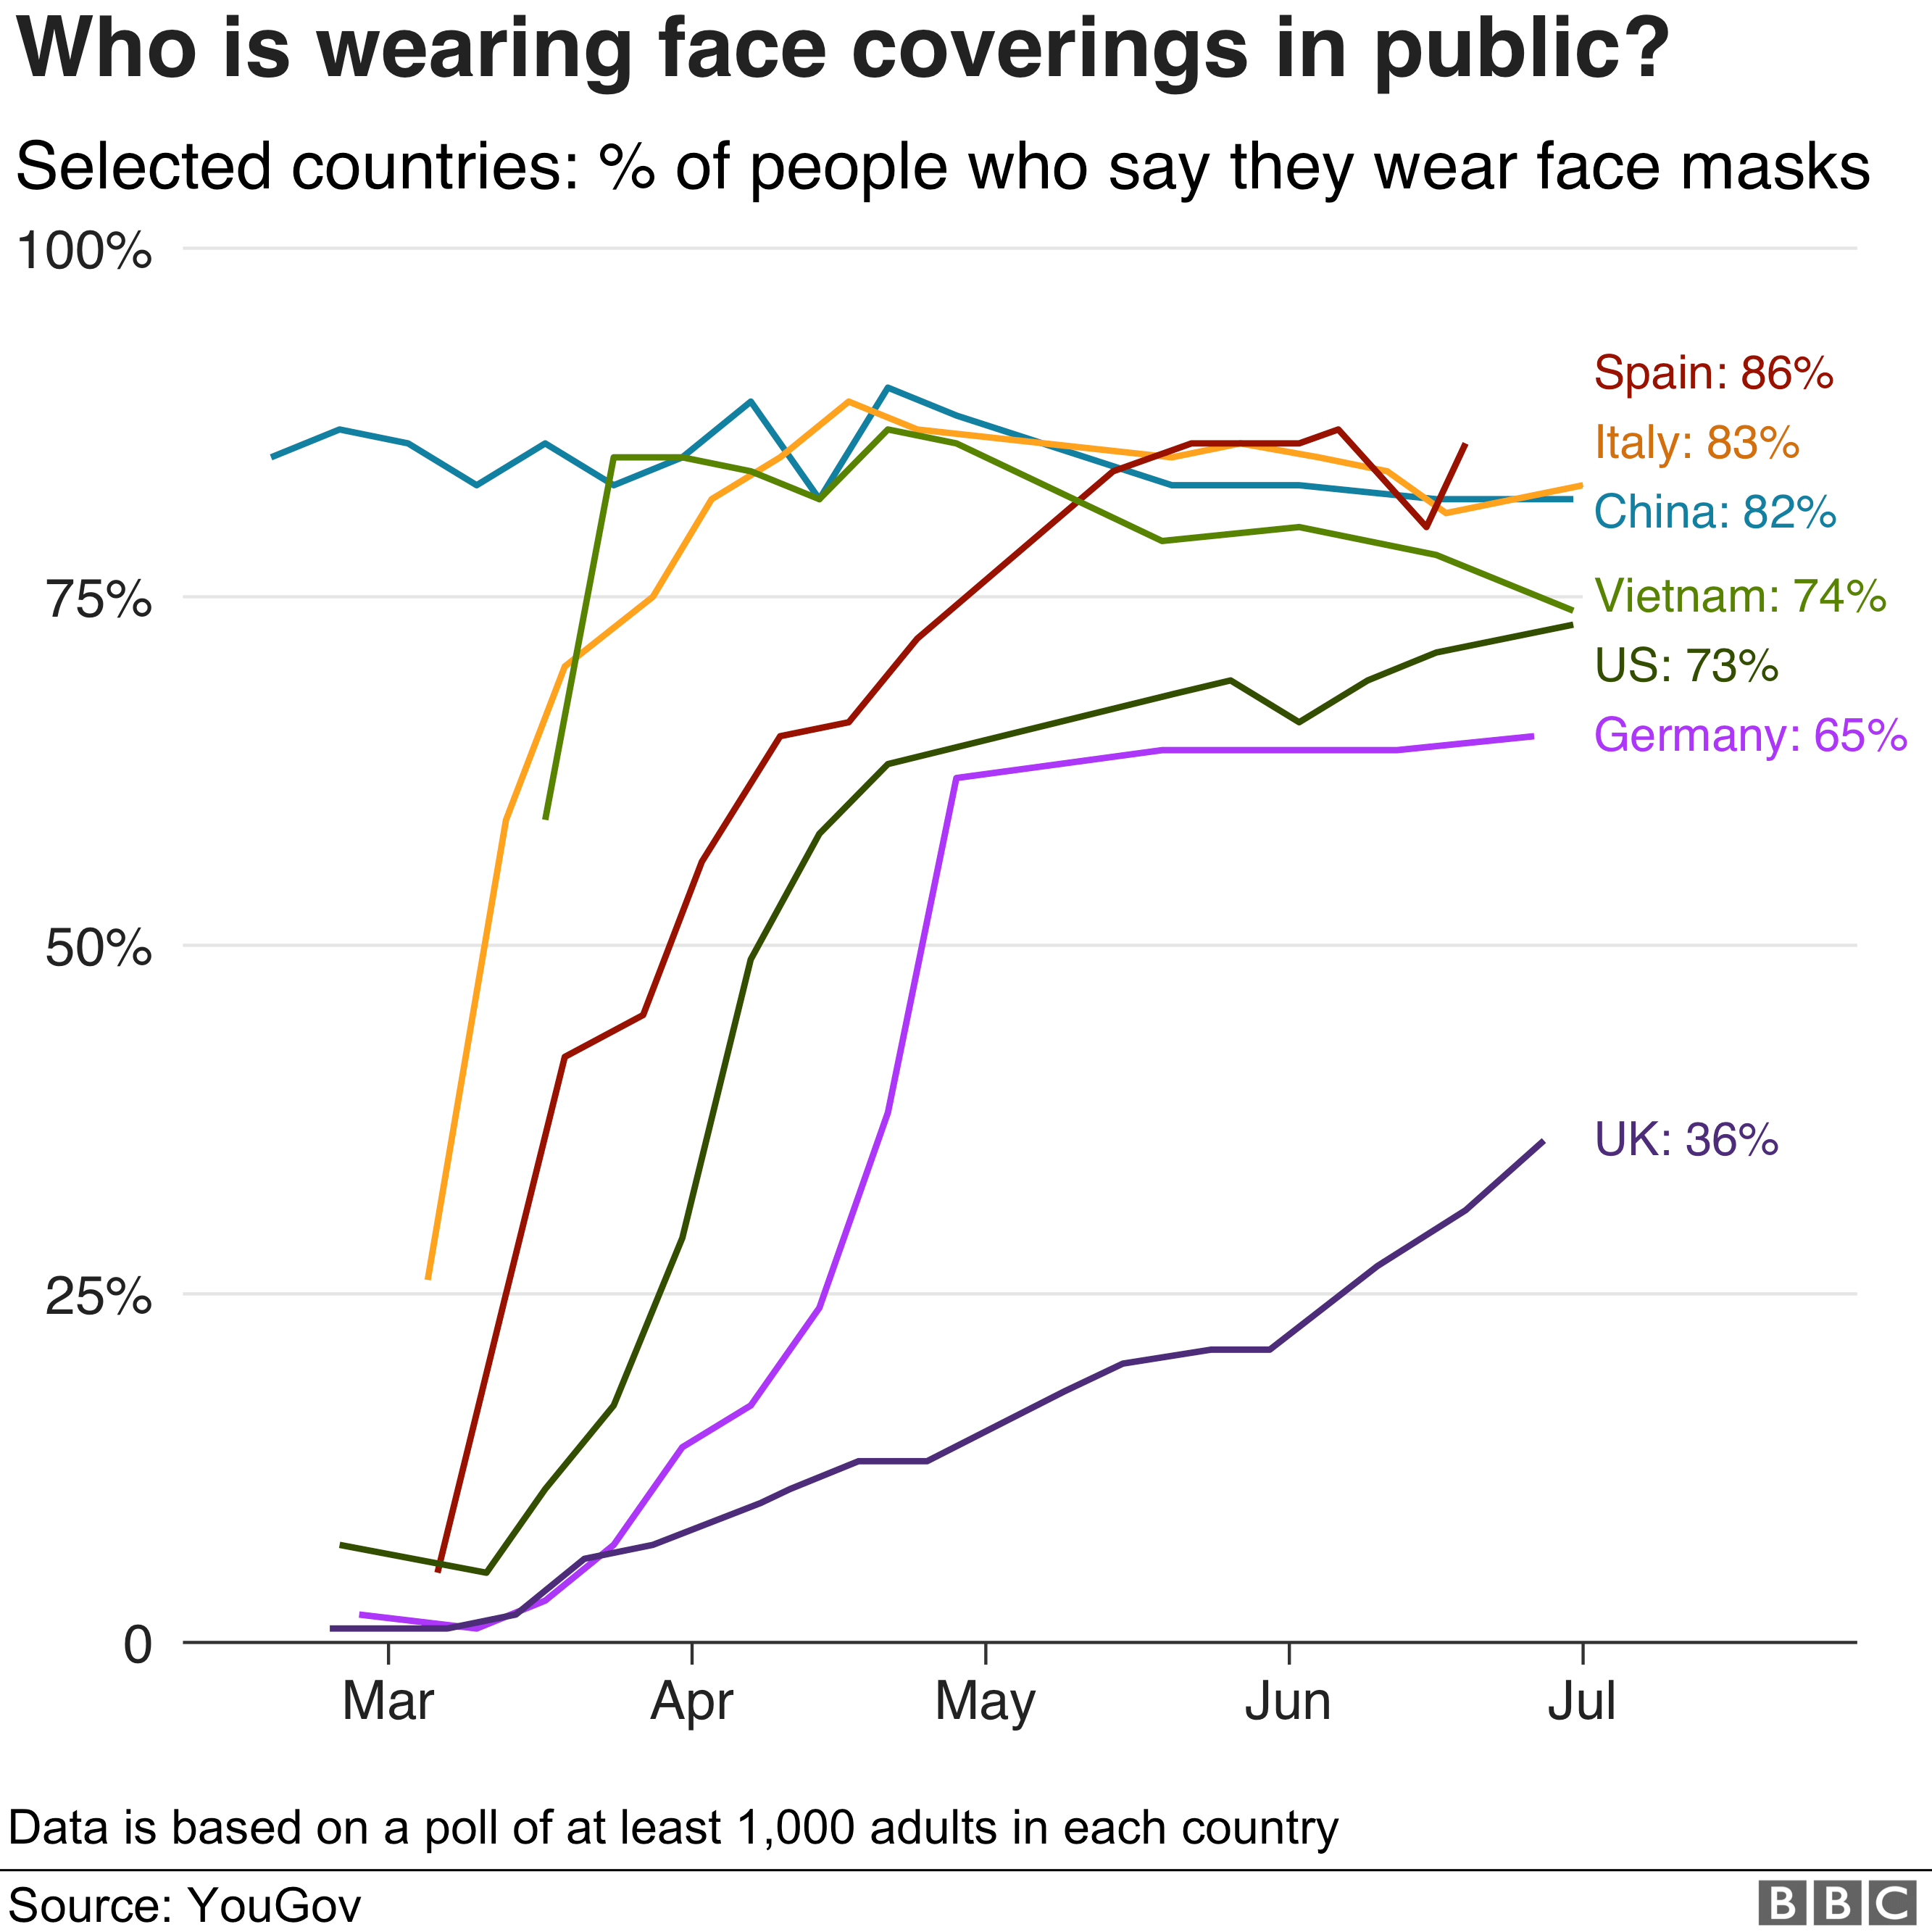 Гистограмма сравнения ношения лицевых масок в разных странах: Испания 86%; Италия 83%; Китай 82%; Вьетнам 74%; Германия 65%; Великобритания 36%